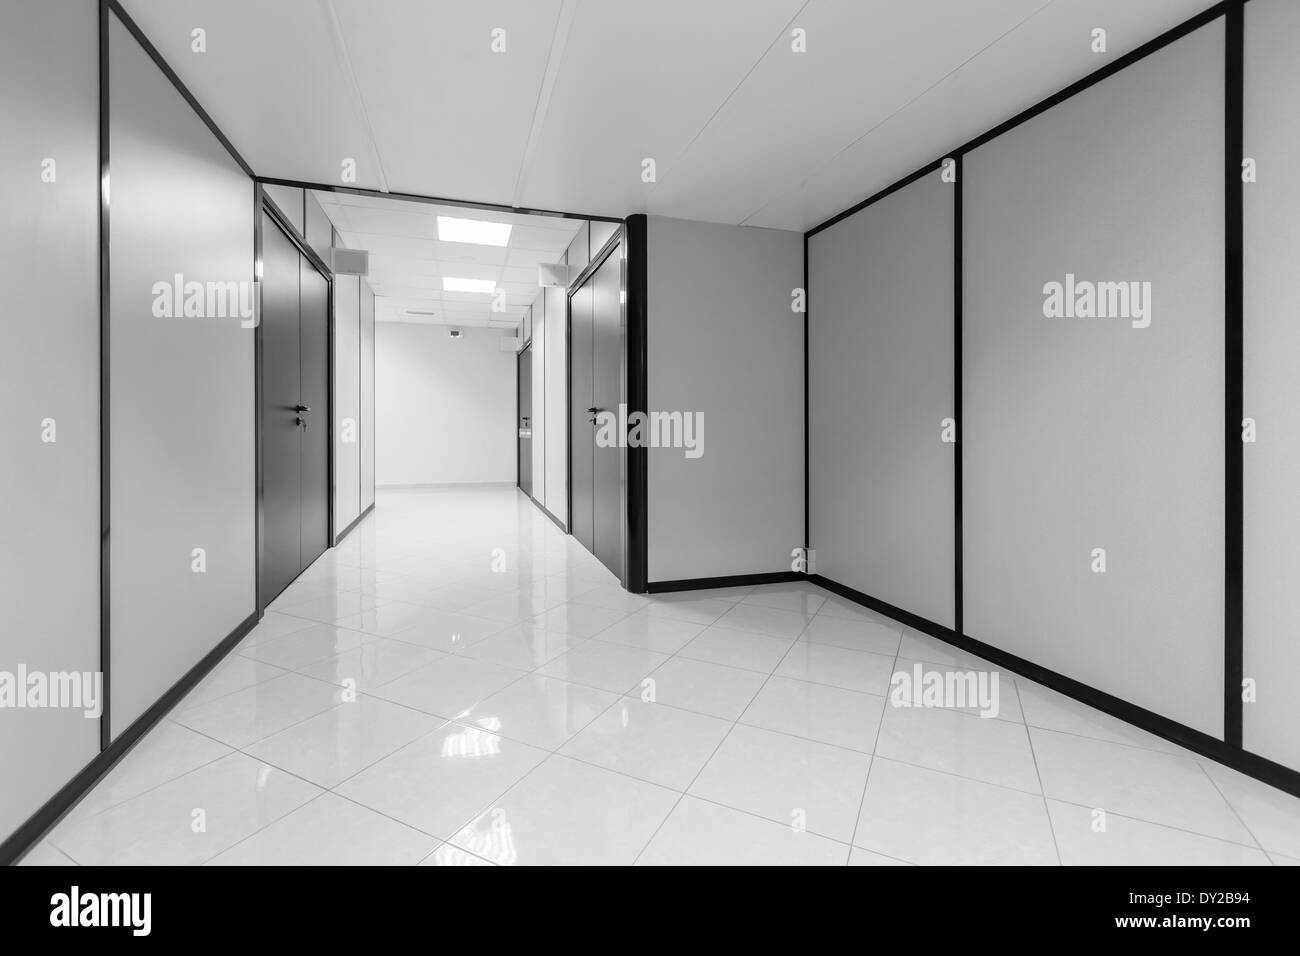 Resumen Oficina vacía el interior con paredes blancas y decoración en negro Foto de stock